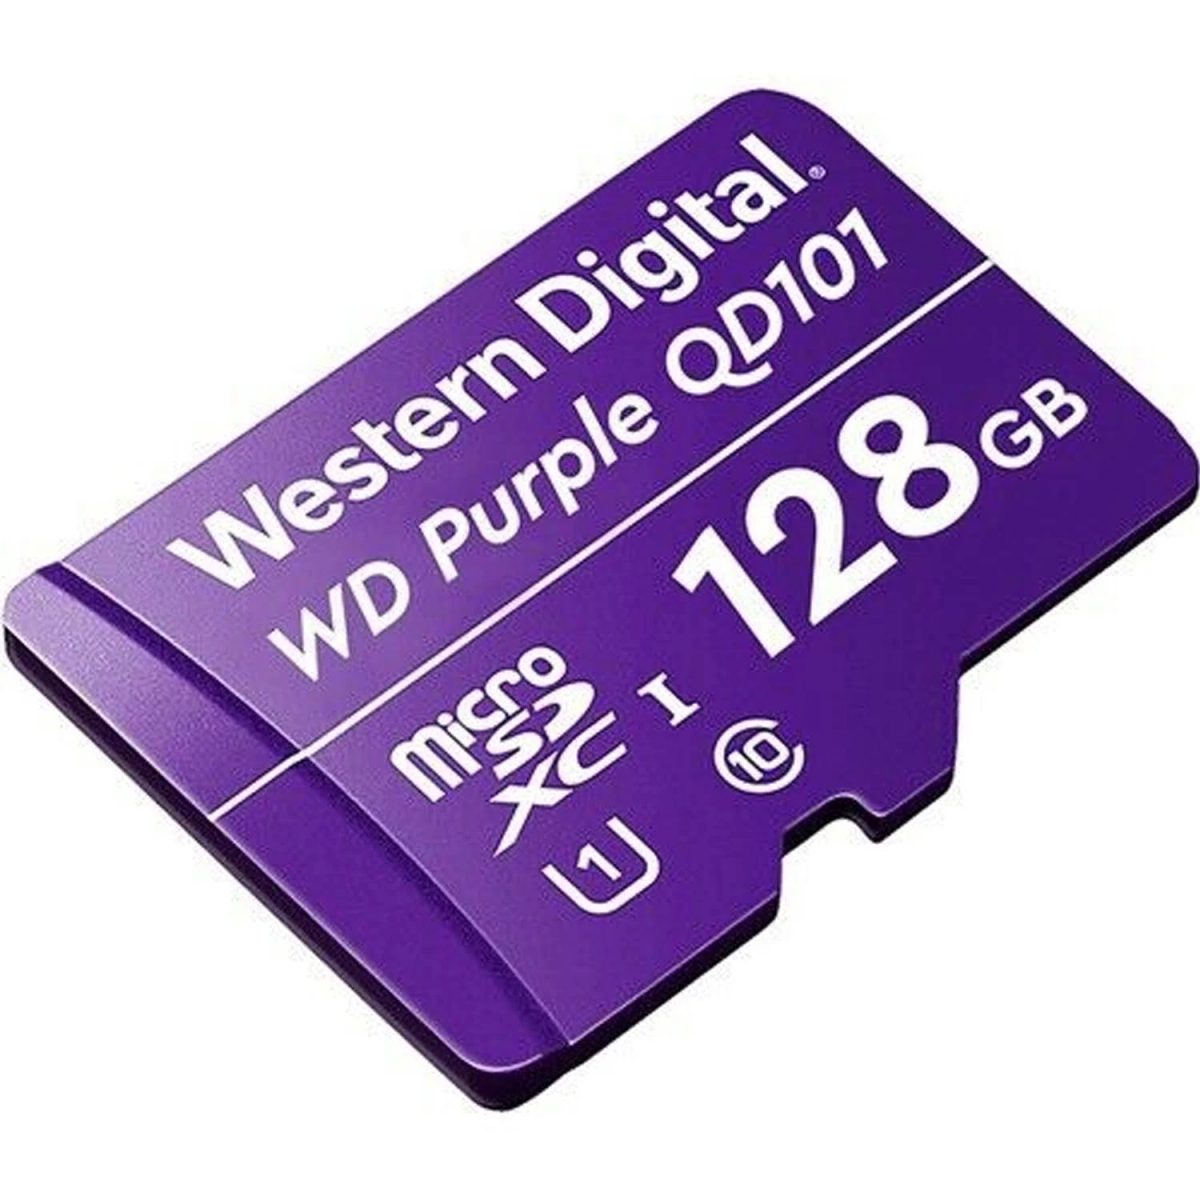 WESTERN DIGITAL WDD128G1P0C, Speicherkarte, 128 SD GB